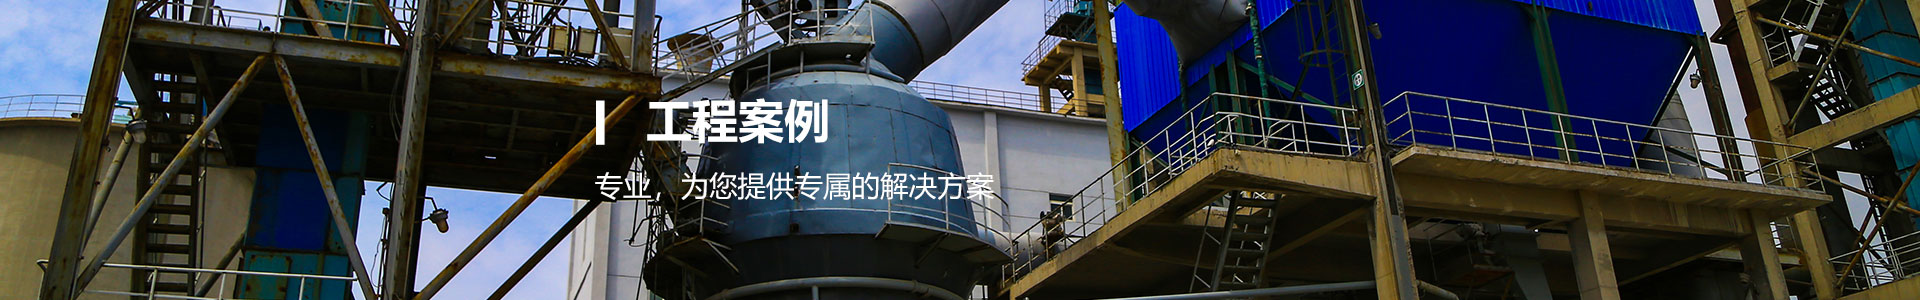 海泰创意产业科技园-工程案例-天津海得润滋建材有限公司